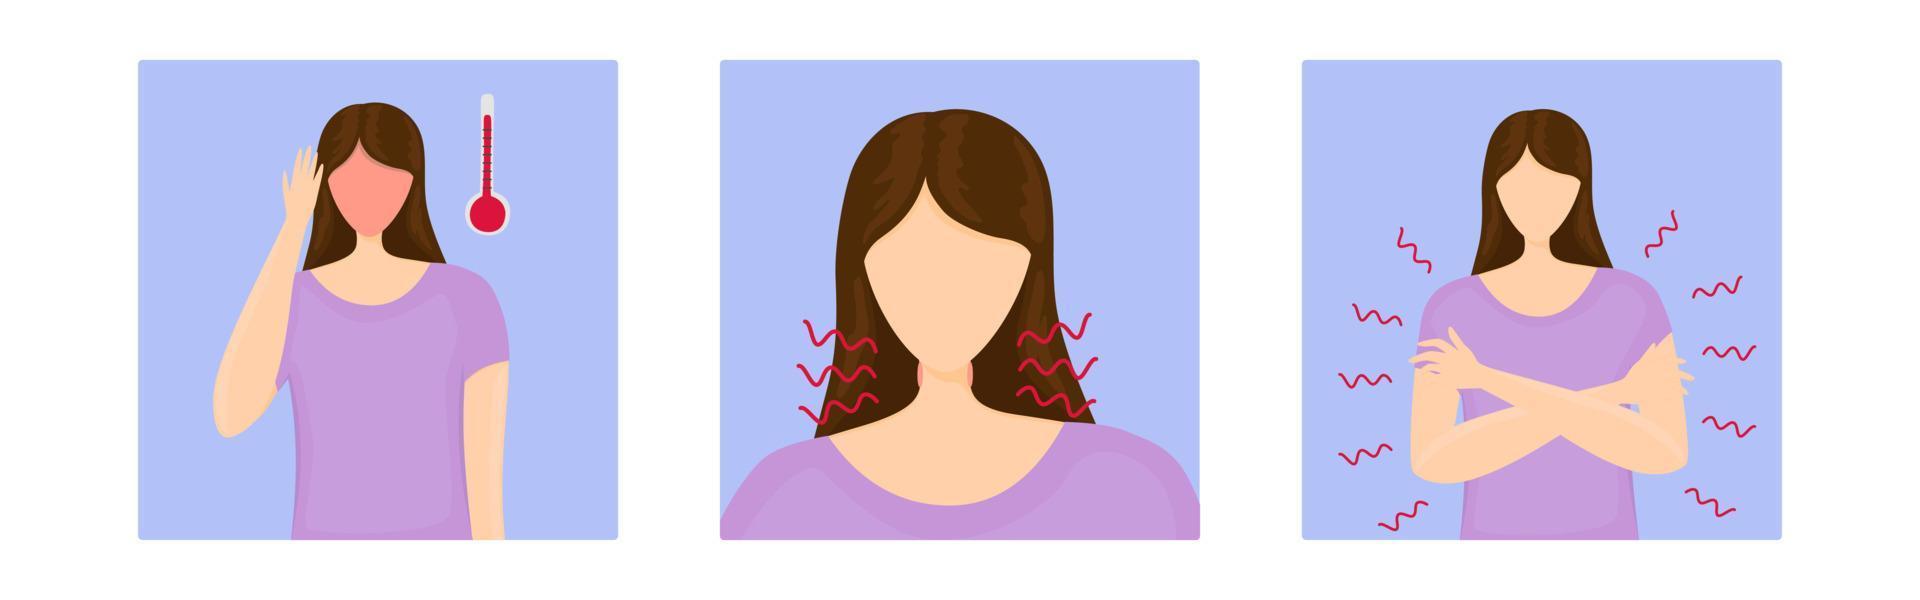 vrouw met symptomen voor infographic vector geïsoleerde illustratie